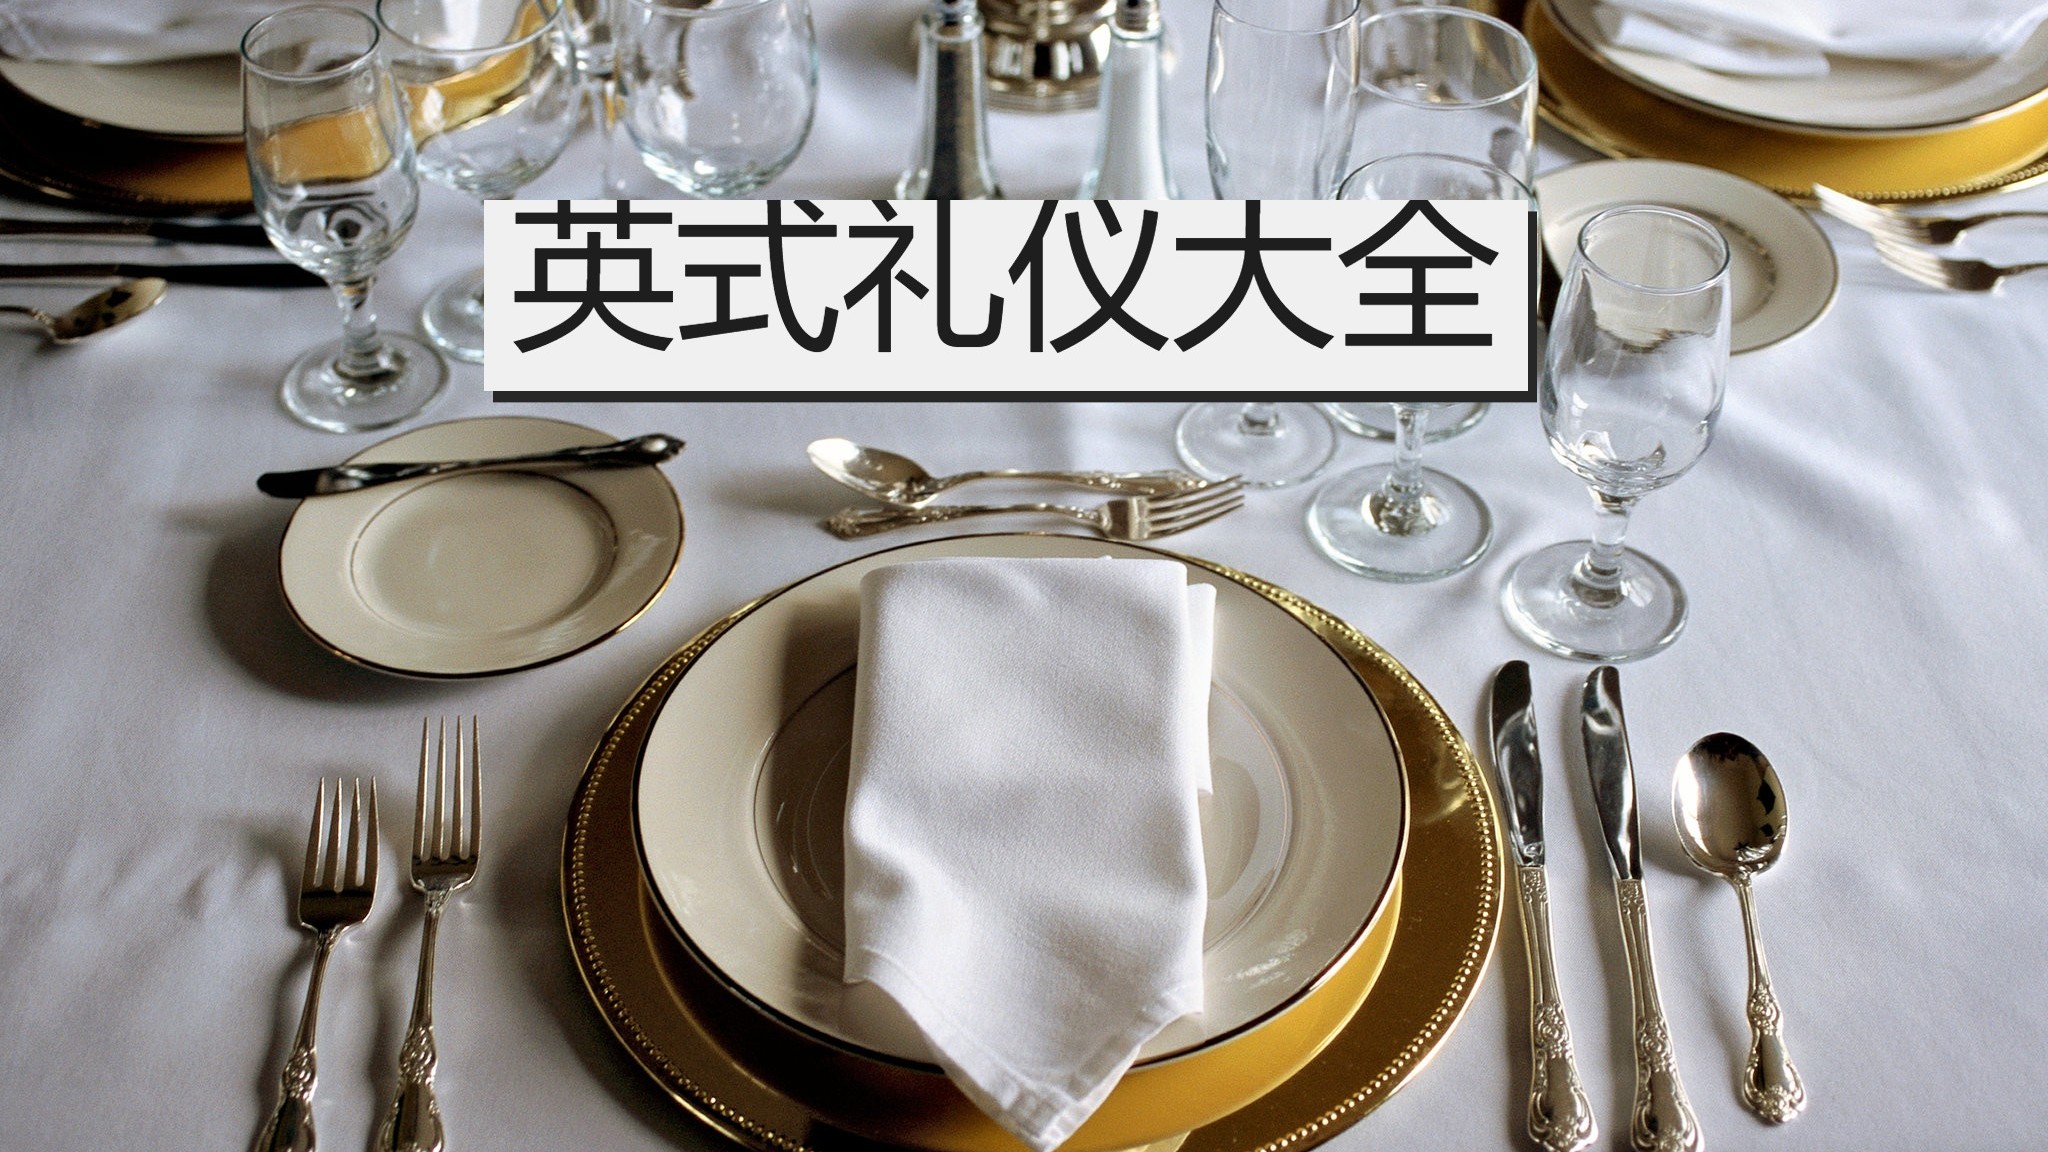 【英式礼仪】基本餐桌礼仪有哪些?